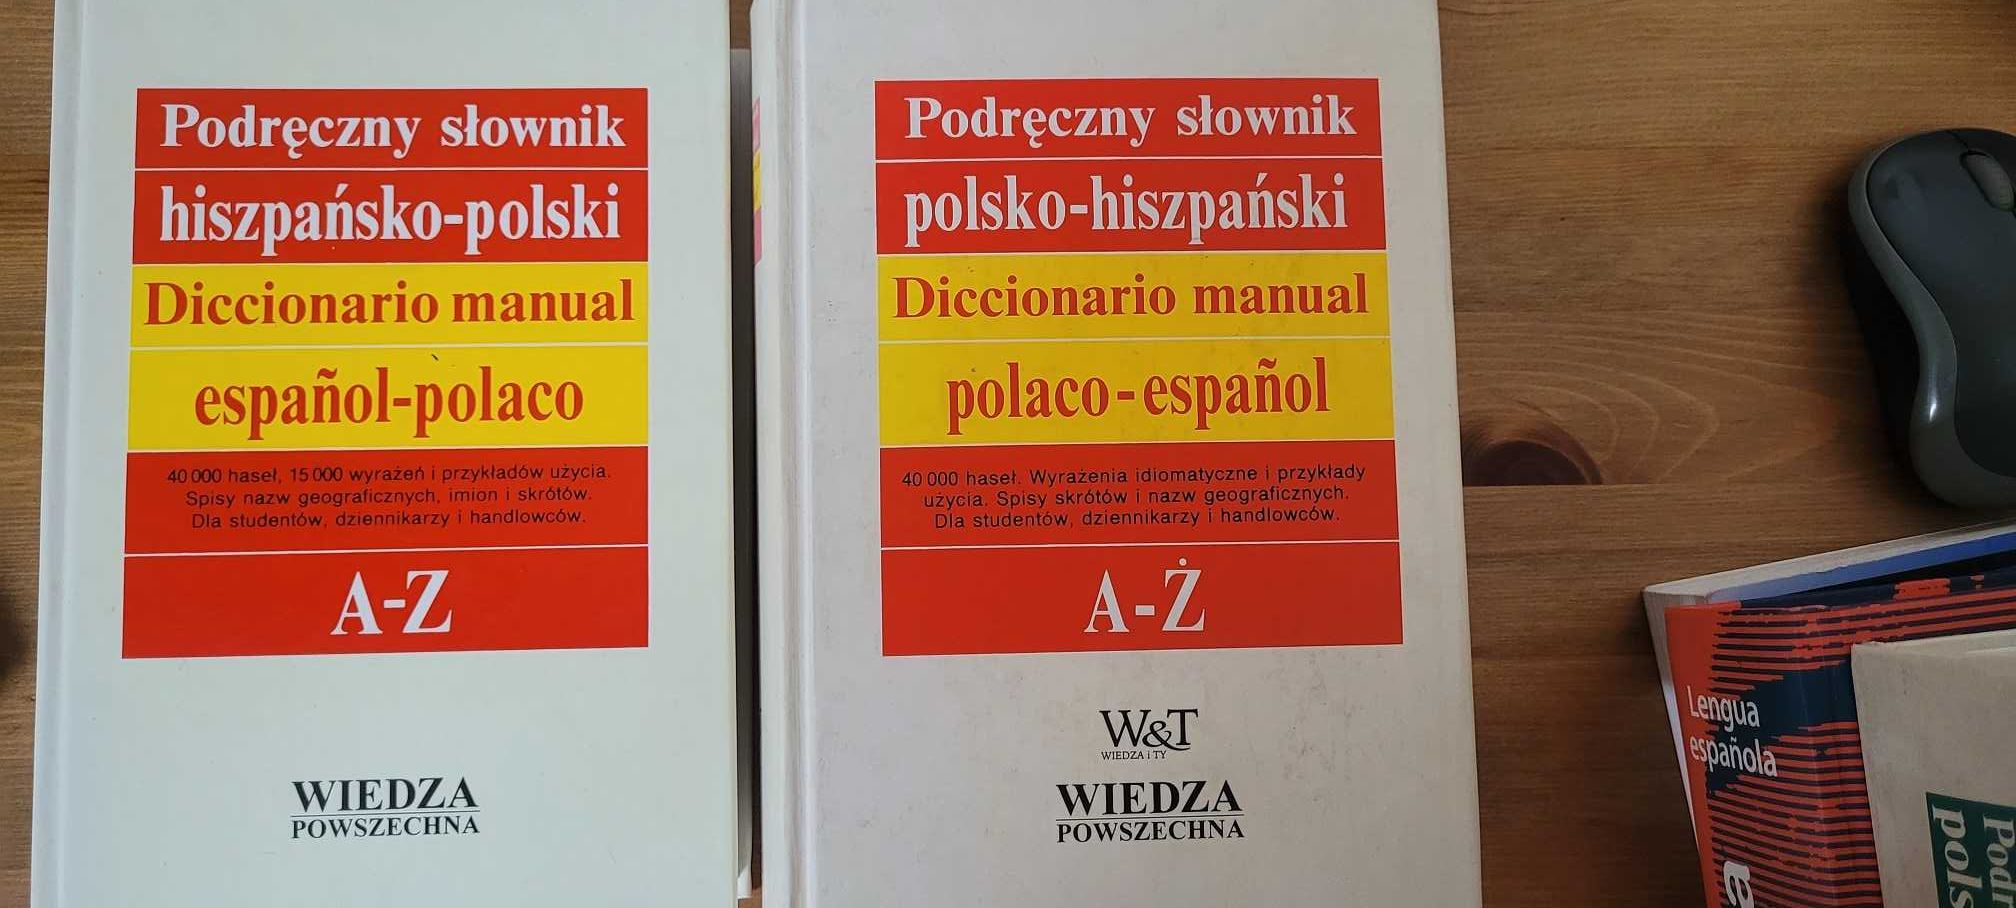 Podręczny słownik polsko-hiszpański, i hiszpańsko- polski 2 Tomy DELE